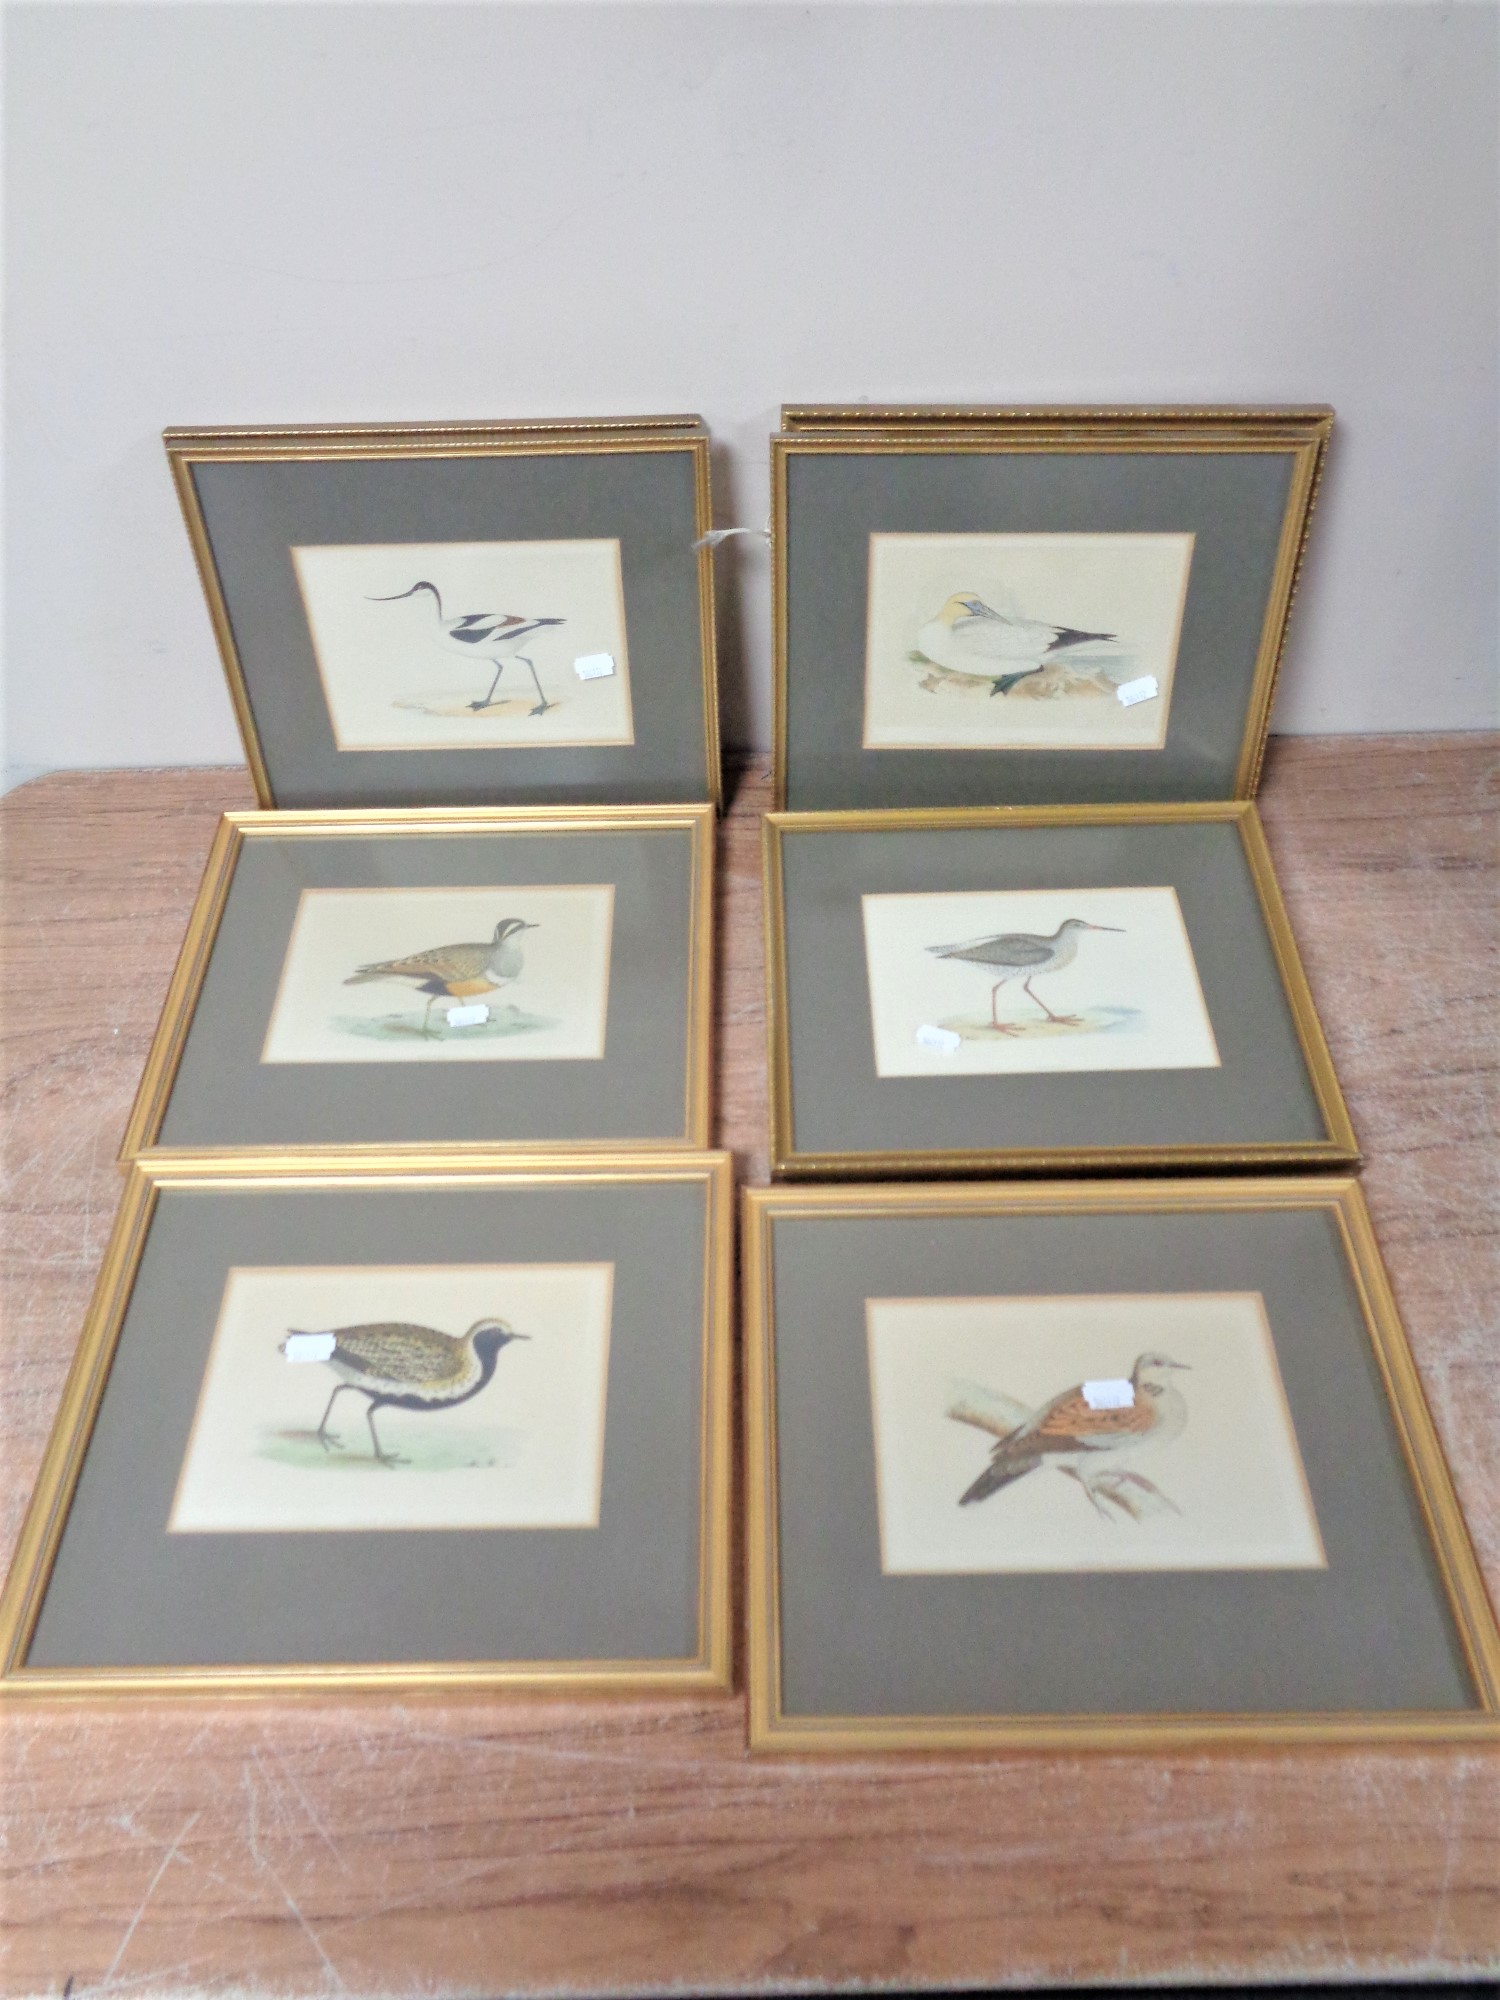 Nine gilt framed coloured book plates depicting birds.